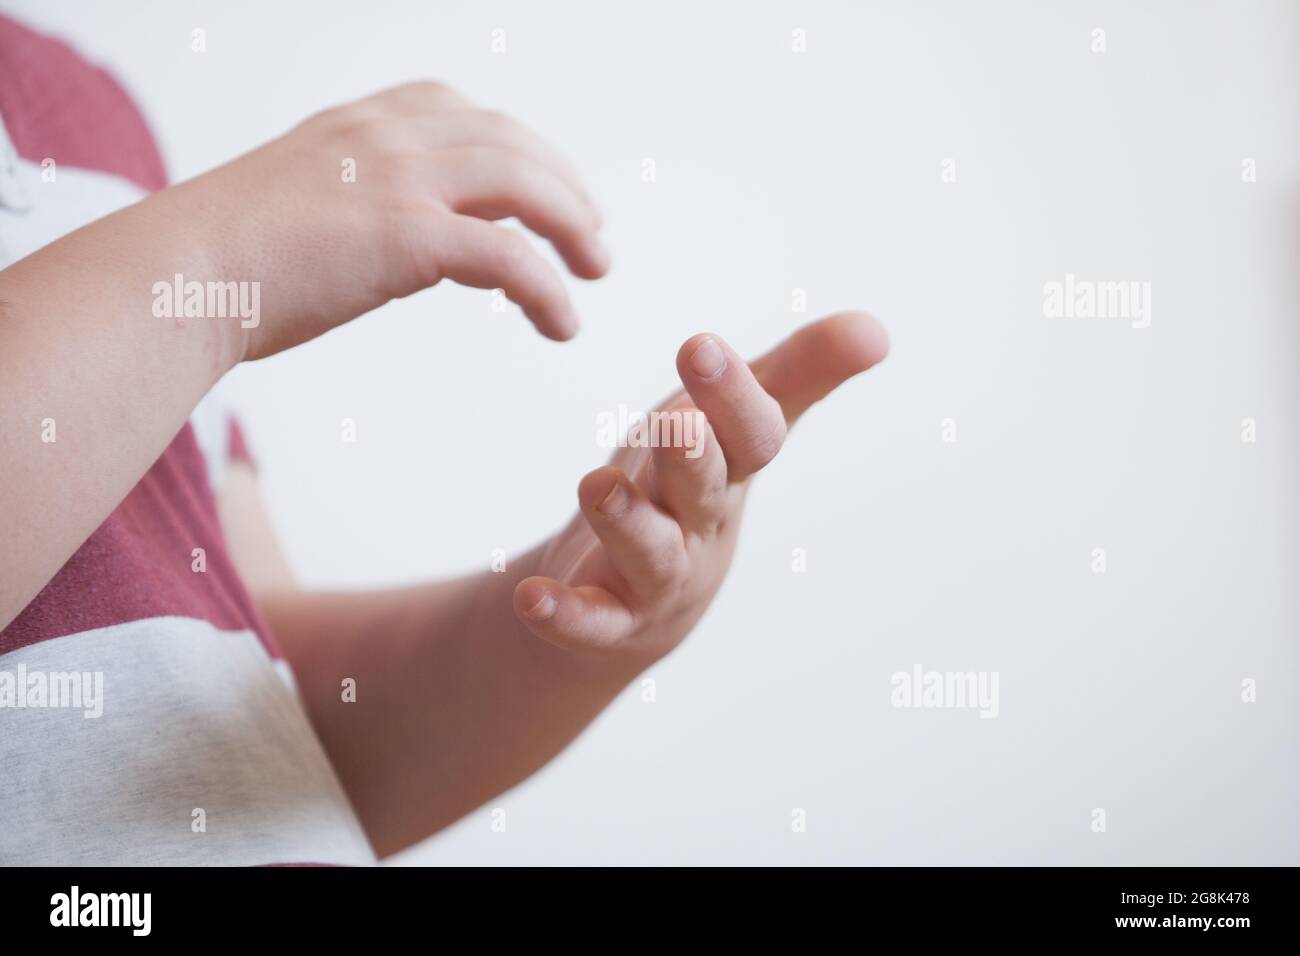 Hände in Kontakt. Beziehung, Verbindung und Kommunikation mit Berührung, zärtliche Geste. Down-syndrom. Stockfoto